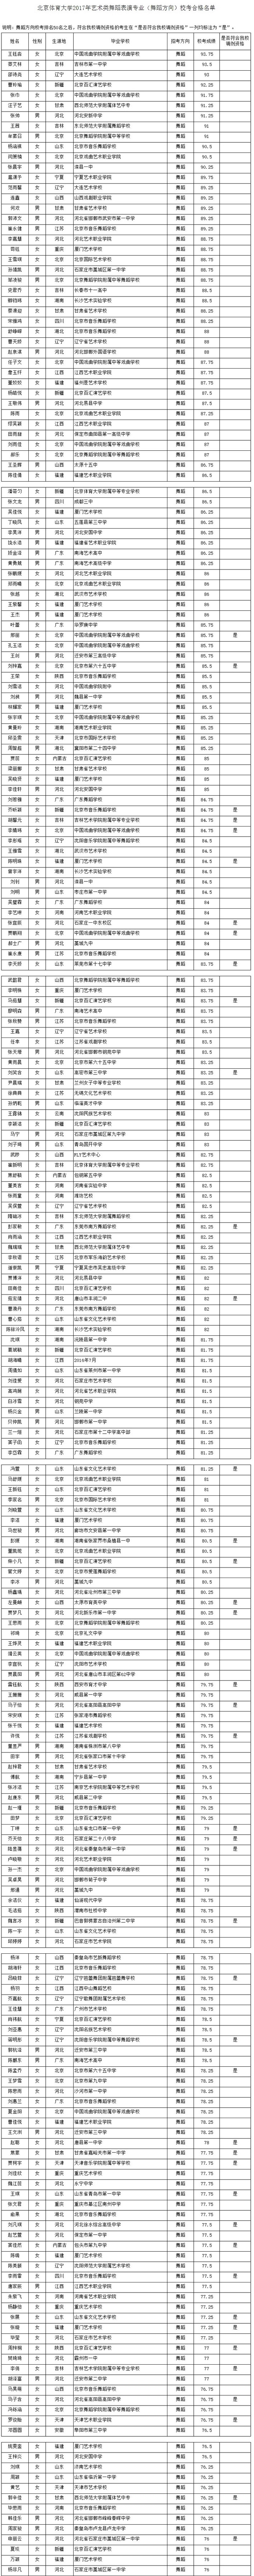 2017年北京体育大学舞蹈表演专业(舞蹈方向)校考合格名单.jpg